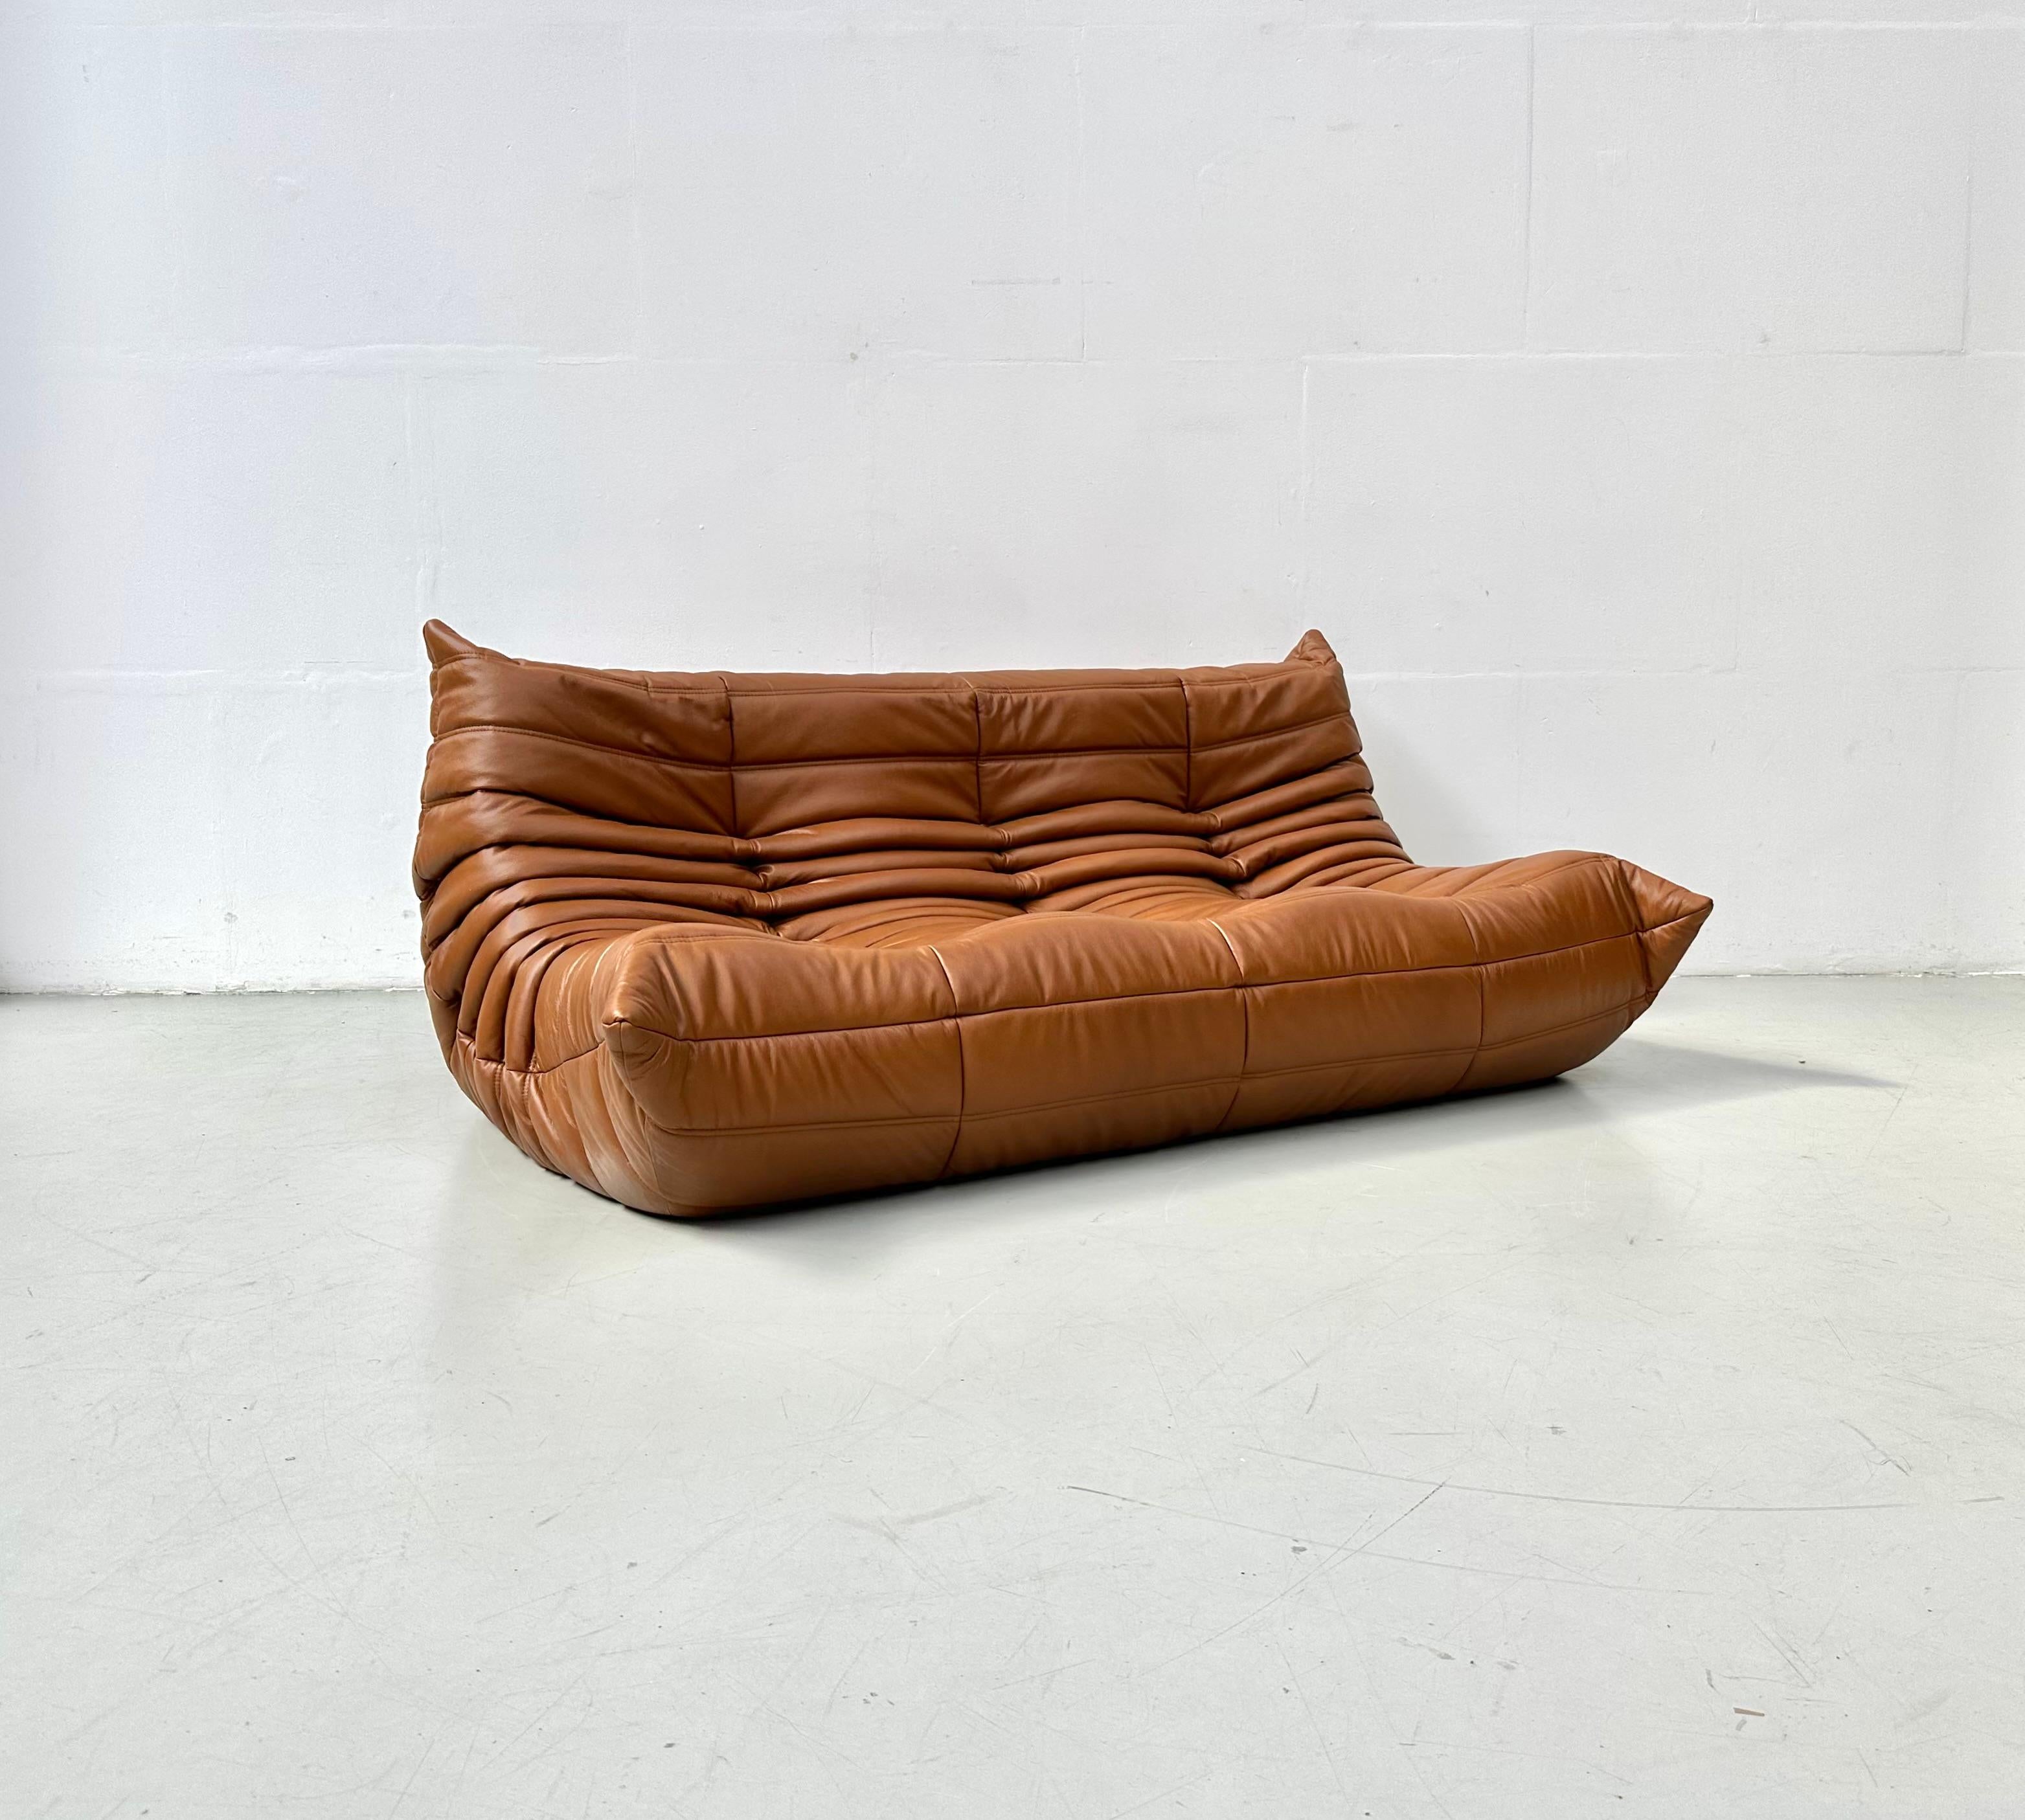 Der Togo wurde 1973 von Michel Ducaroy für Ligne Roset entworfen. Es ist das erste Sofa/Sessel, das nur aus Schaumstoff und Leder besteht. Die Collection'S zeichnet sich durch ein ergonomisches Design mit Polyätherschaum-Konstruktion und